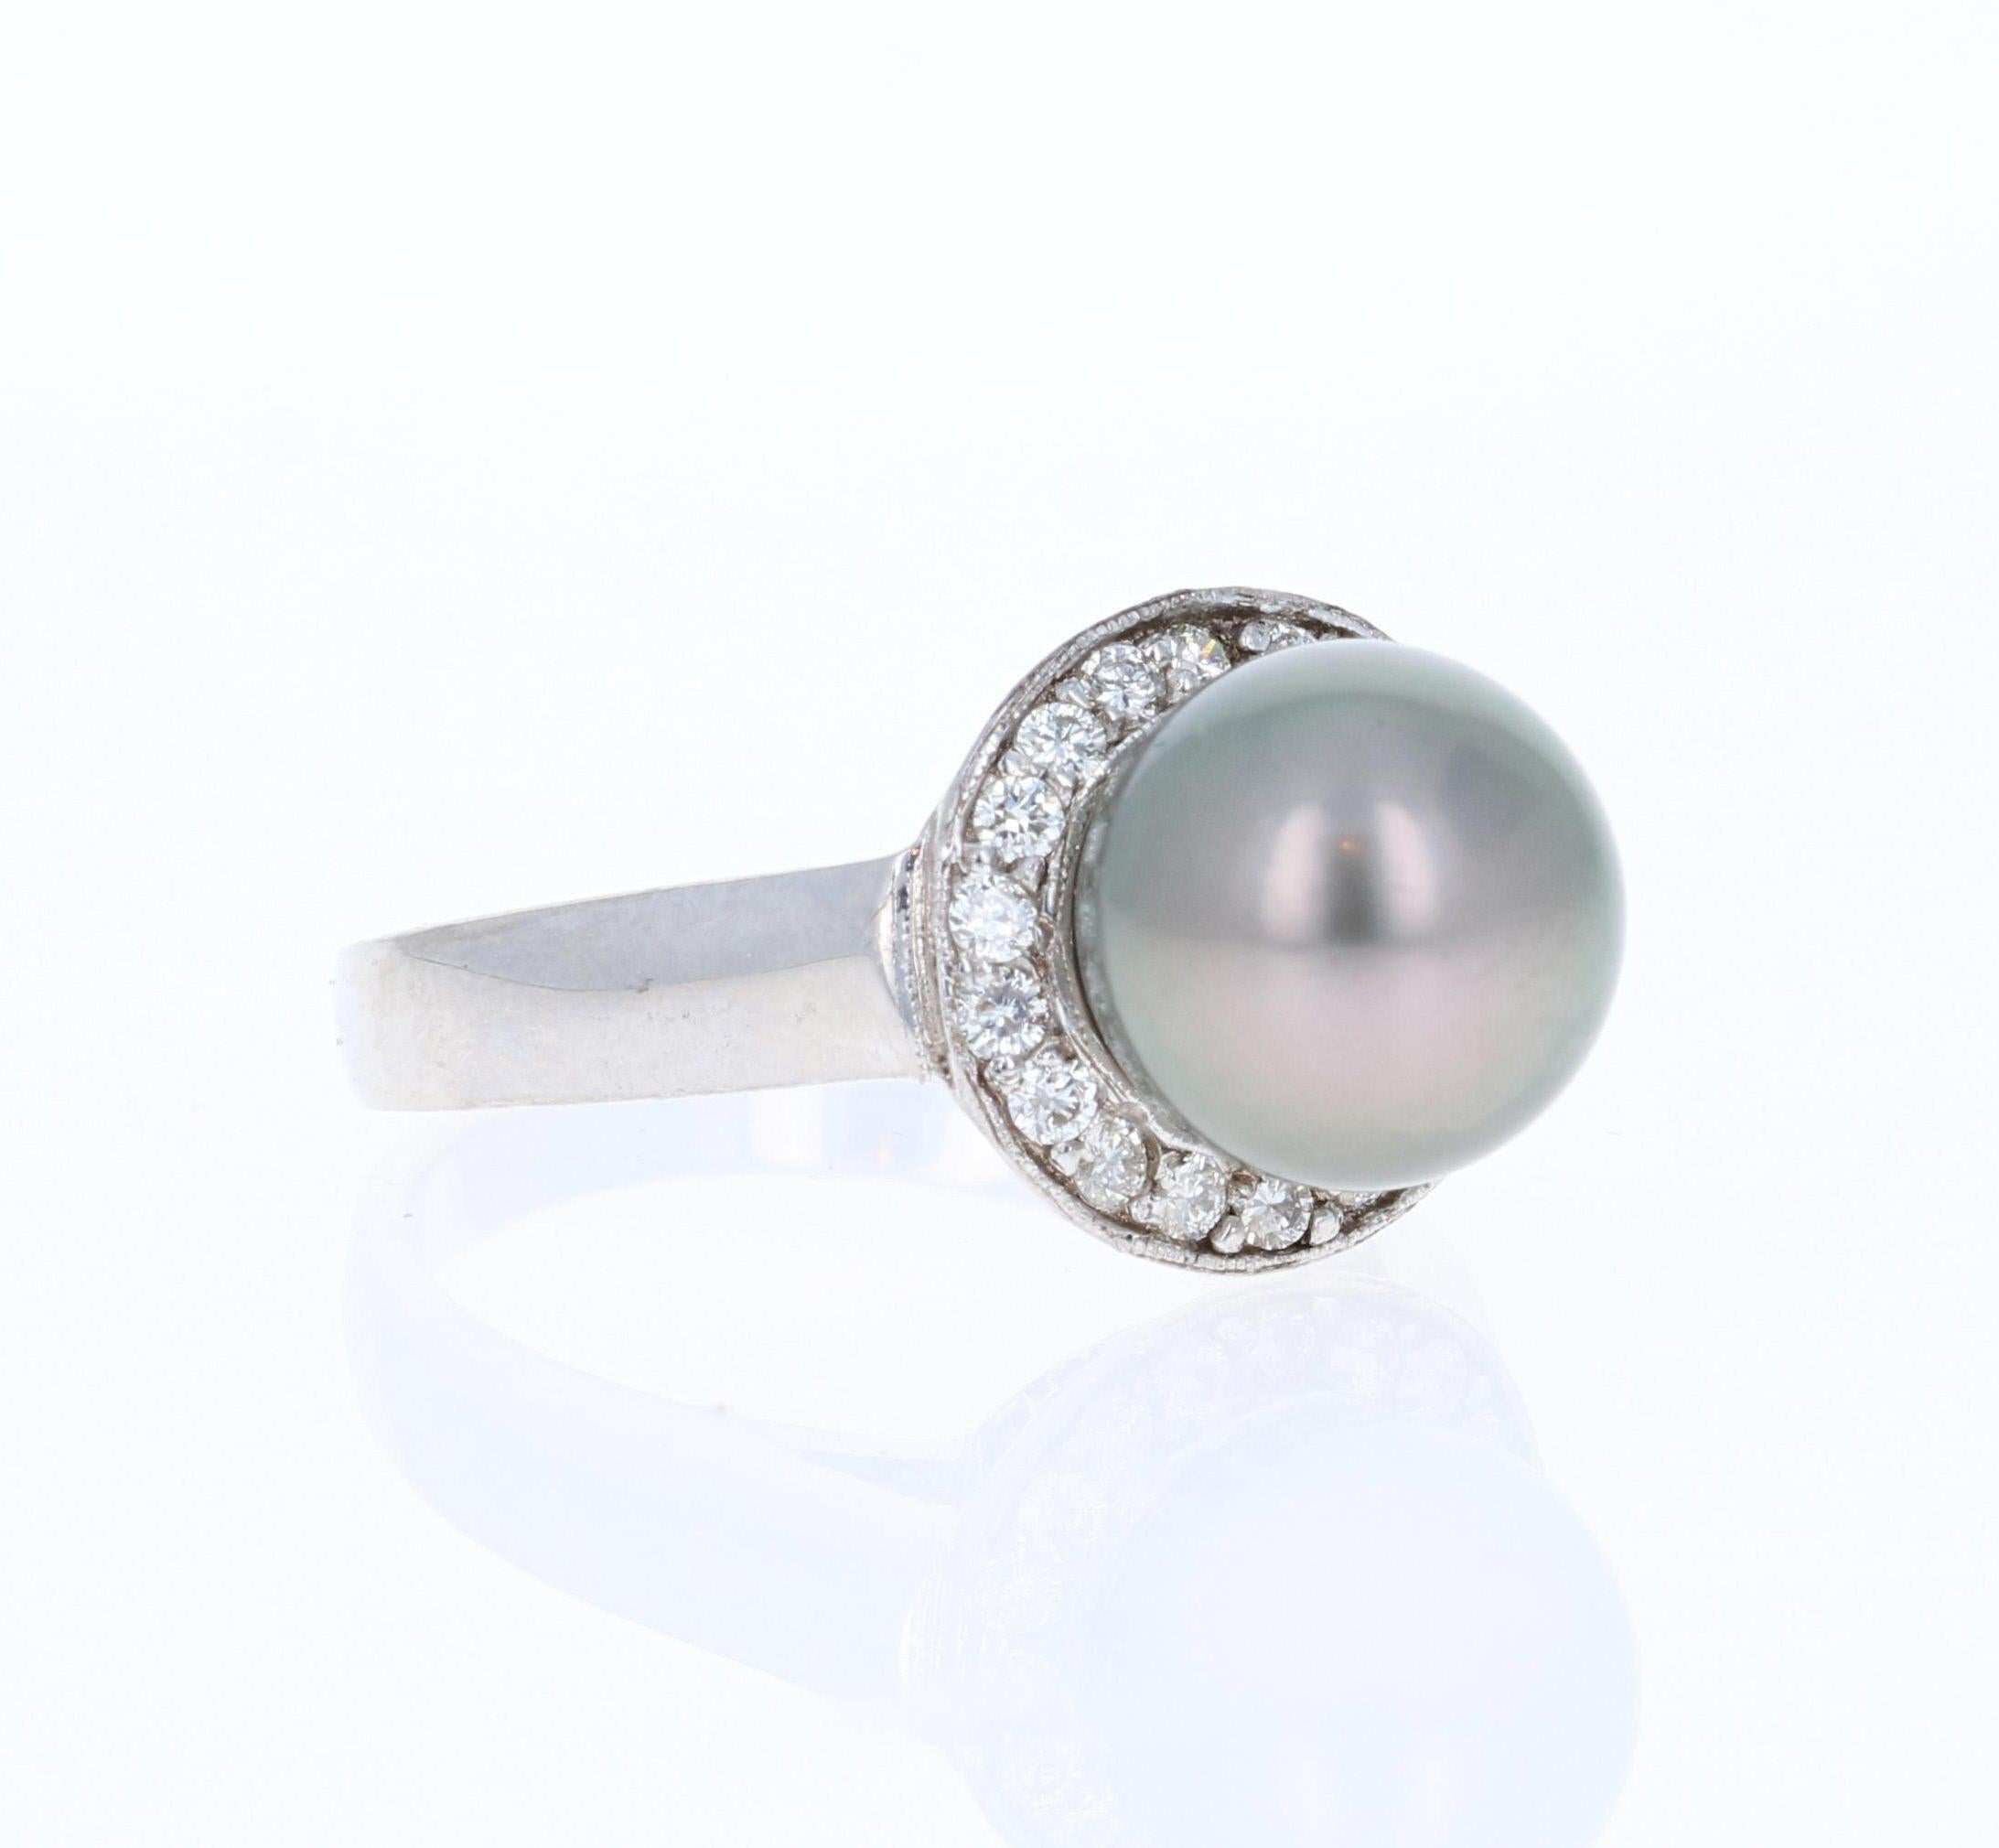 Tahiti-Perlenring mit einer 9 mm großen Perle, umgeben von 18 Diamanten im Rundschliff mit einem Gewicht von 0,28 Karat. (Reinheit: VS2, Farbe: H)
Der Ring ist aus 14K Weißgold gefertigt und wiegt ungefähr 3,8 Gramm.   Der Ring hat die Größe 7 und